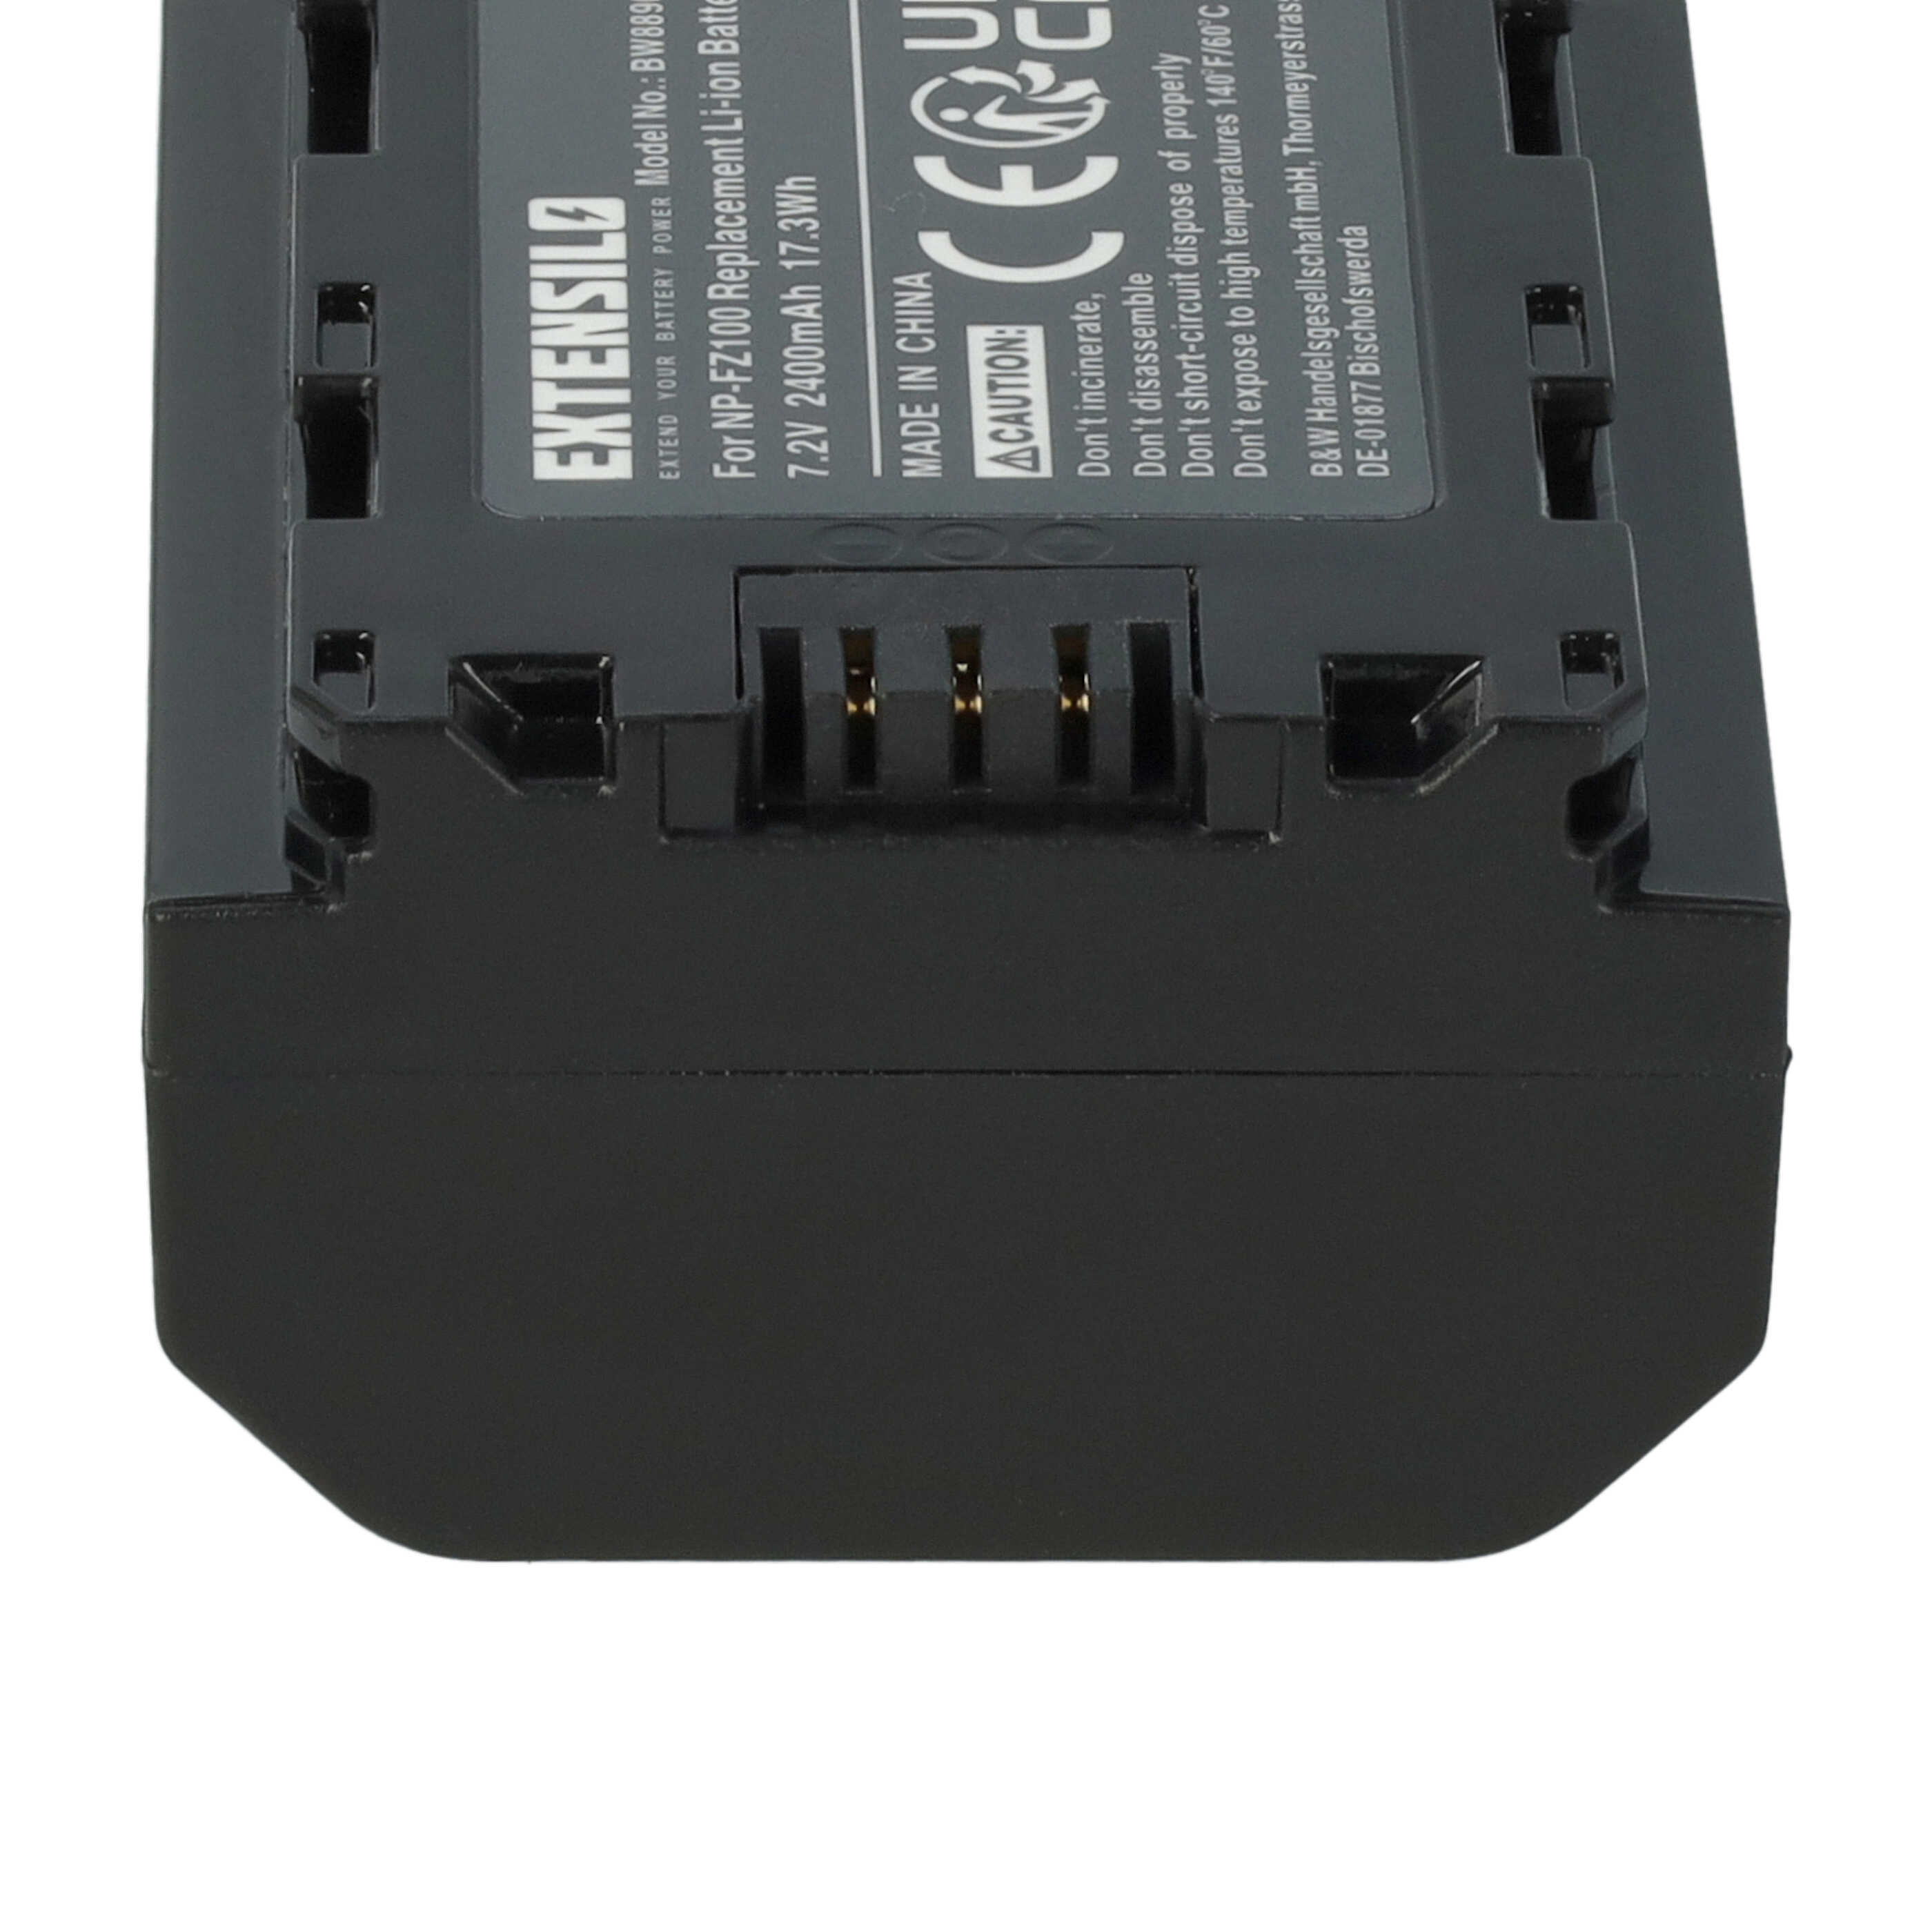 2x Akumulator do aparatu cyfrowego zamiennik Sony NP-FZ100 - 2400 mAh 7,2 V Li-Ion